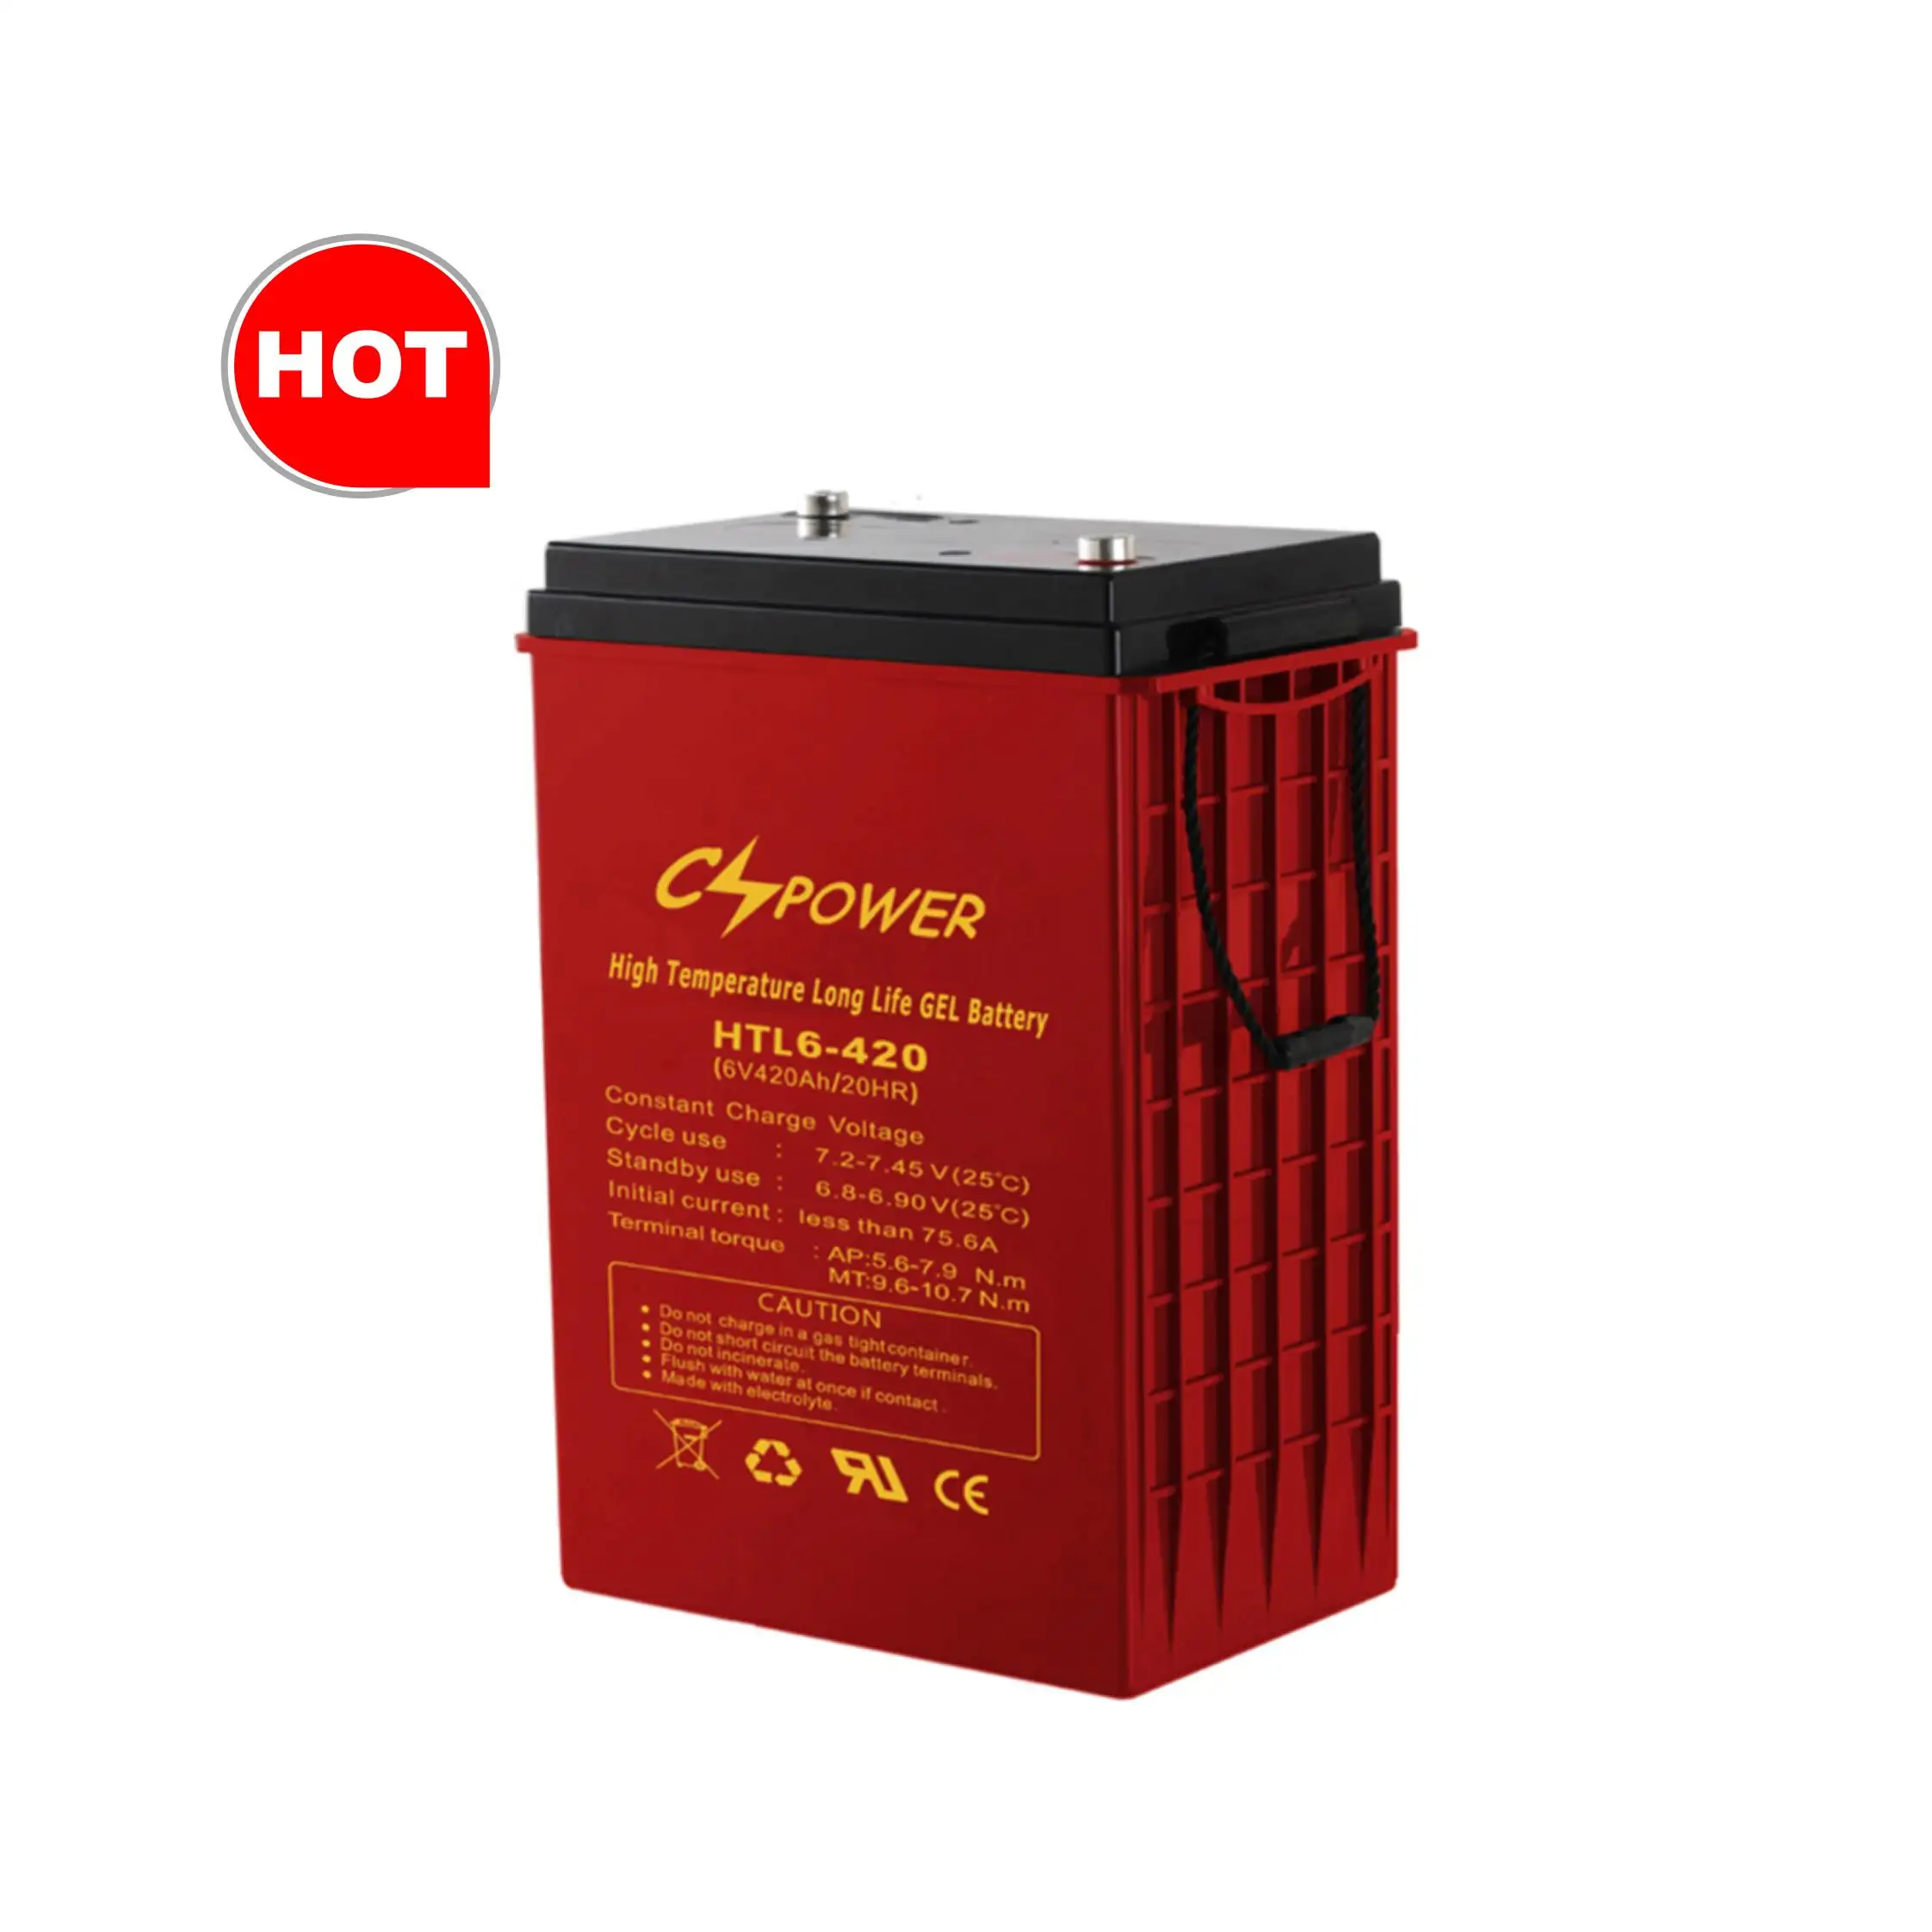 Batterie solaire CSPower HTL6-420 longue durée 6V 420Ah haute température cycle profond batterie solaire gel HTL6-420